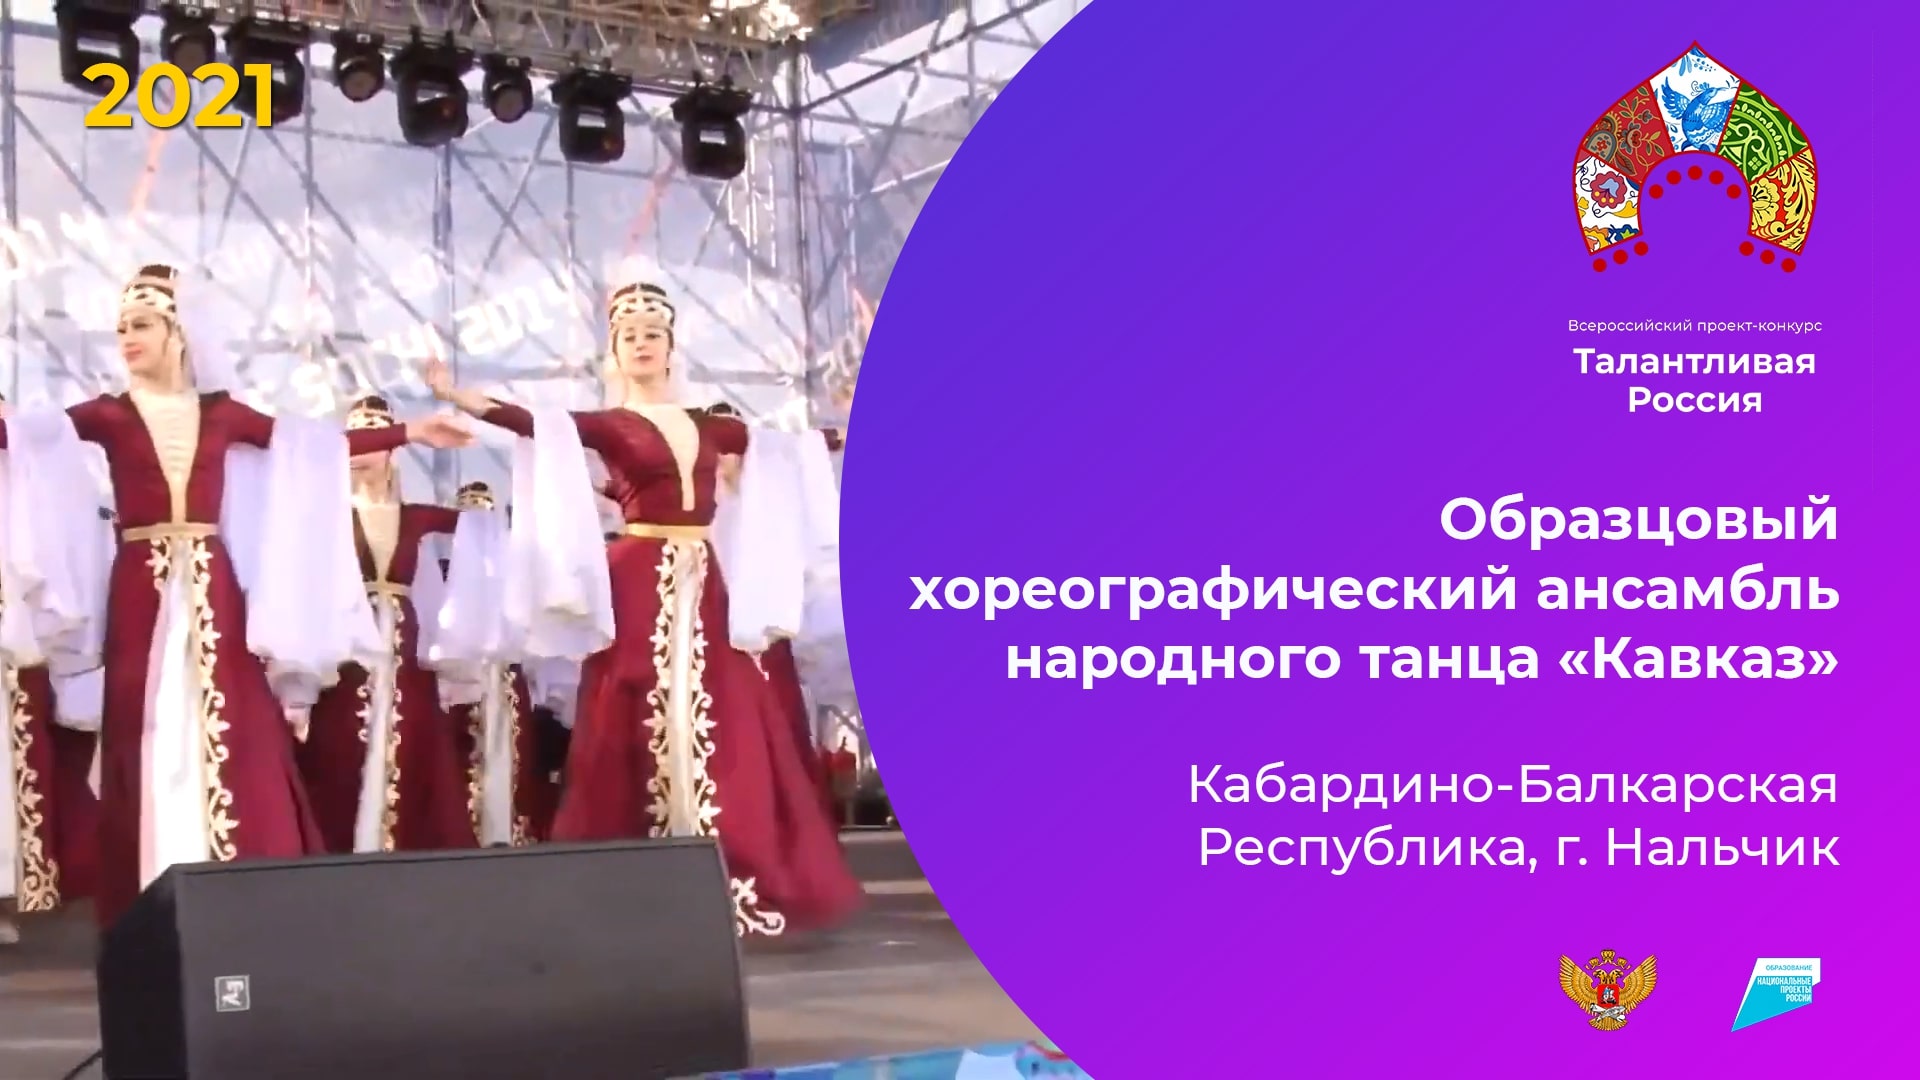 Образцовый хореографический ансамбль народного танца «Кавказ»